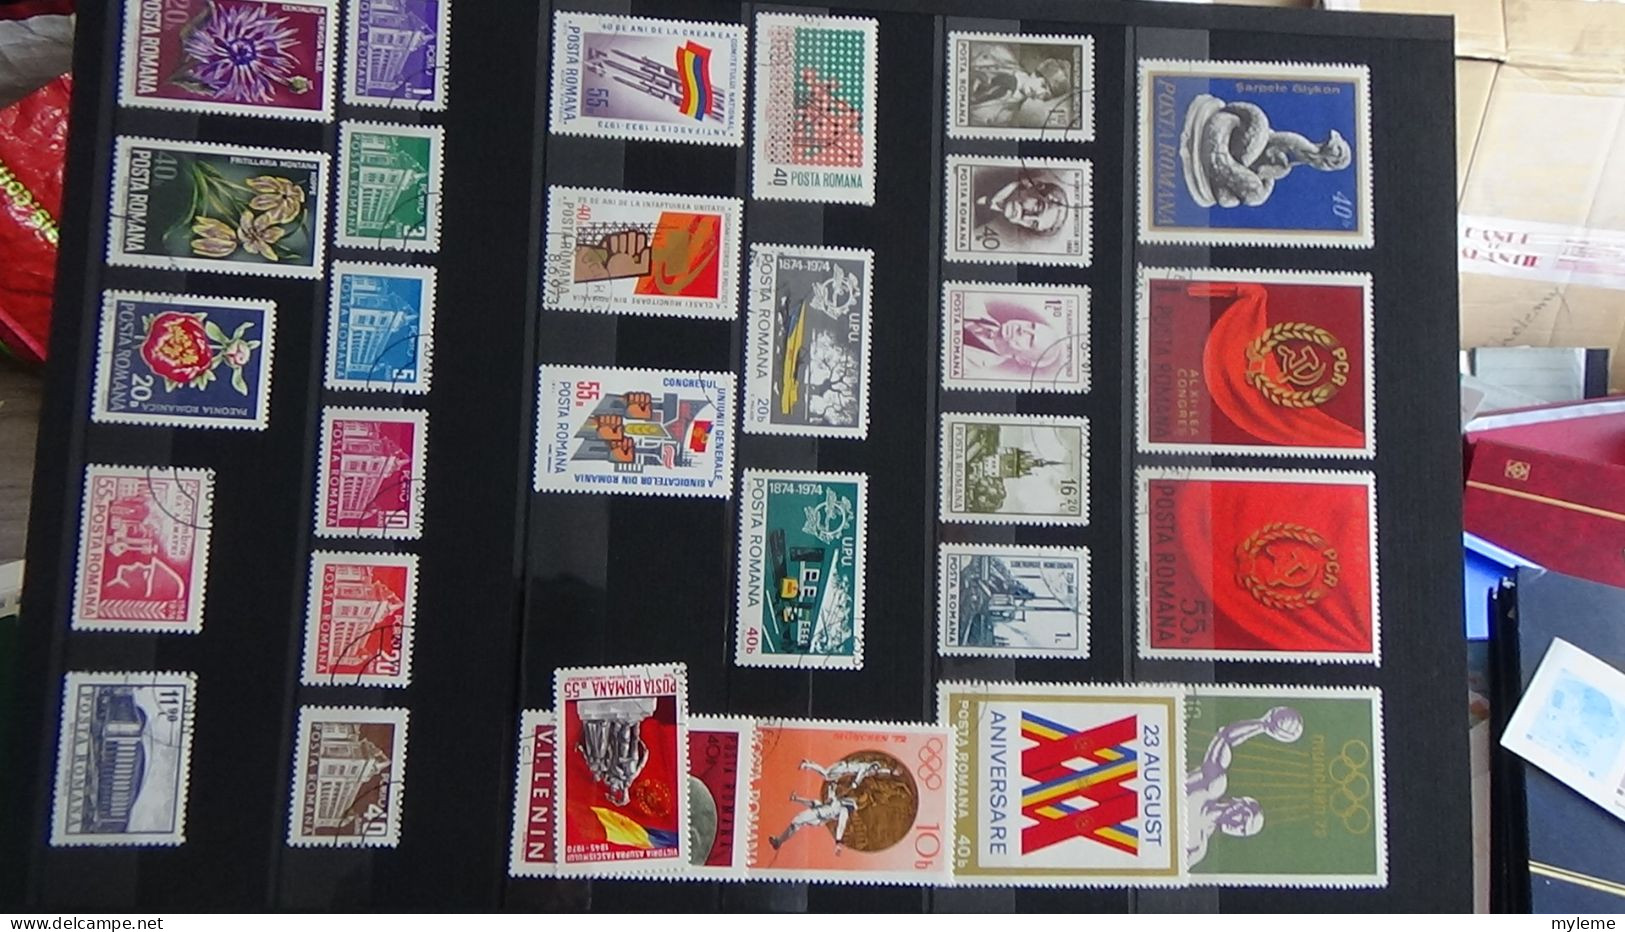 AZ147 Album de timbres oblitérés et *de divers pays + plaquette de timbres ** de France. A saisir !!